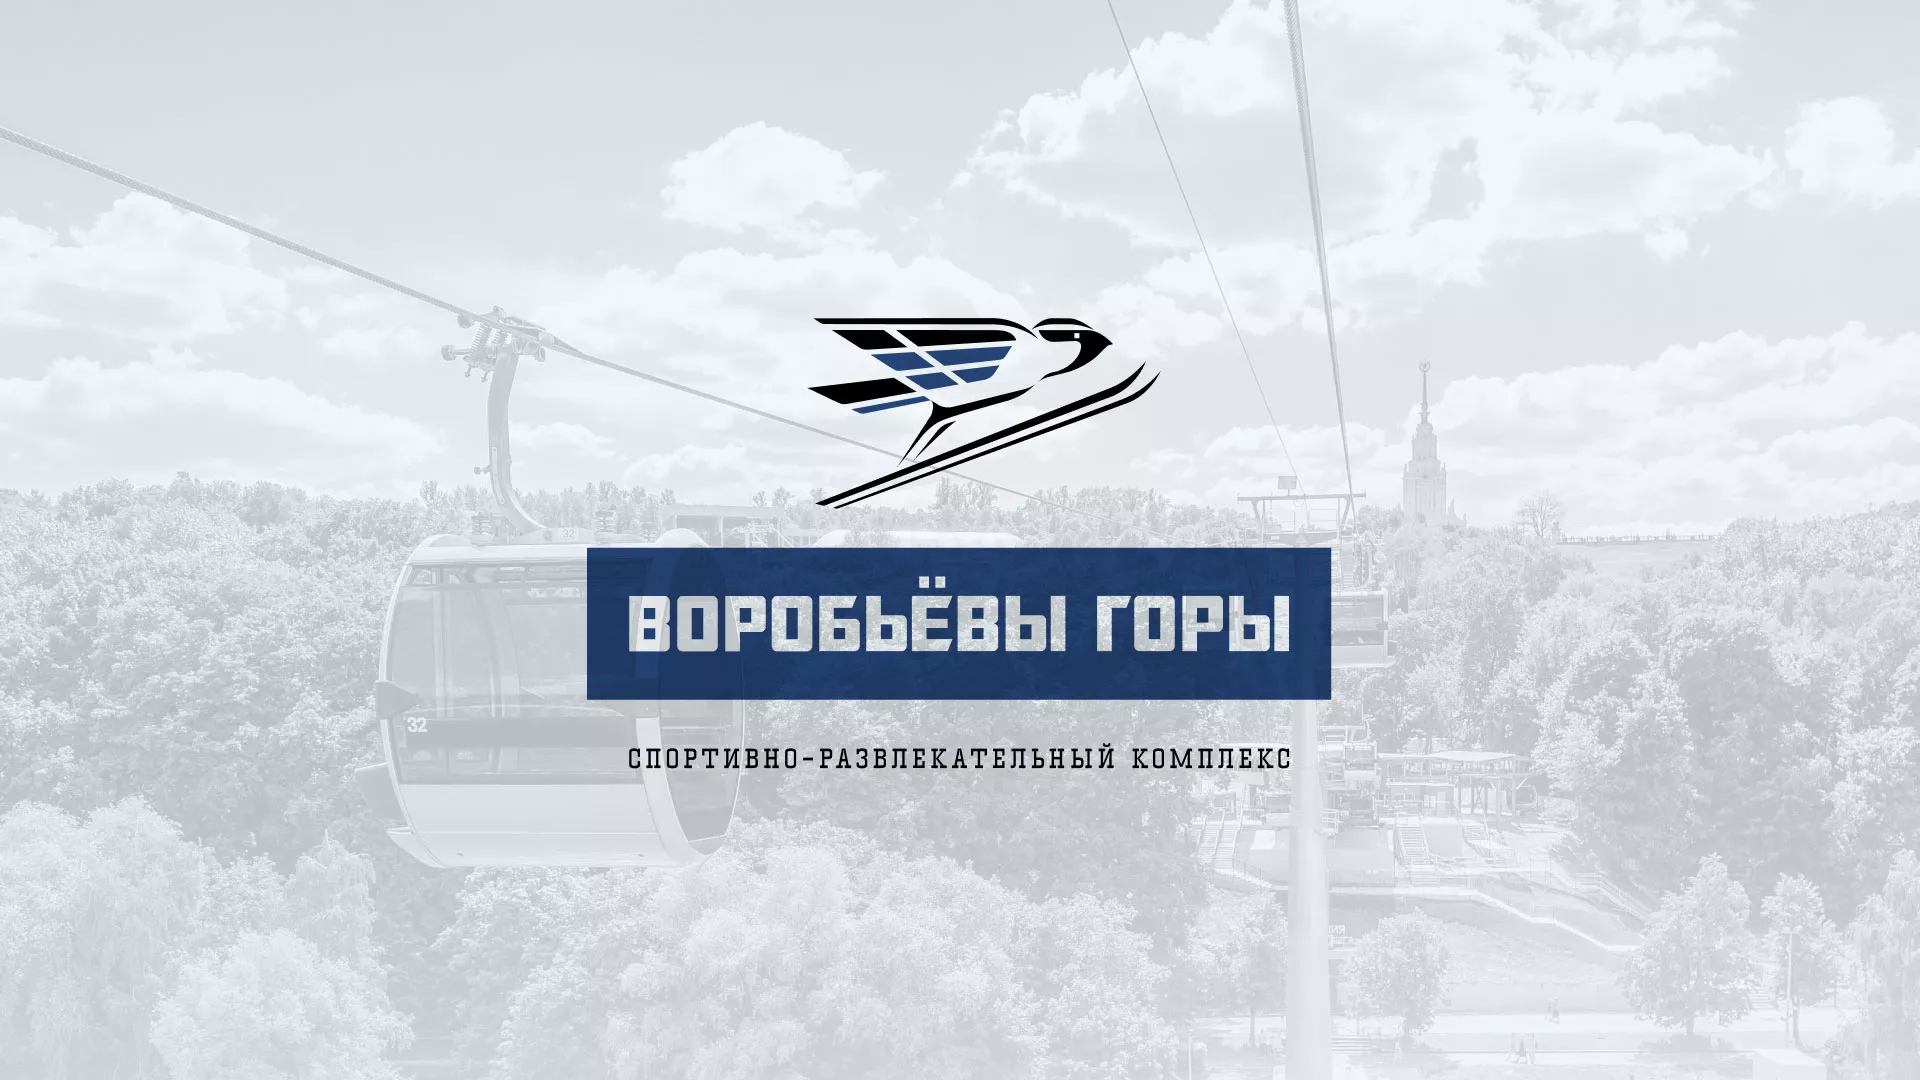 Разработка сайта в Котово для спортивно-развлекательного комплекса «Воробьёвы горы»